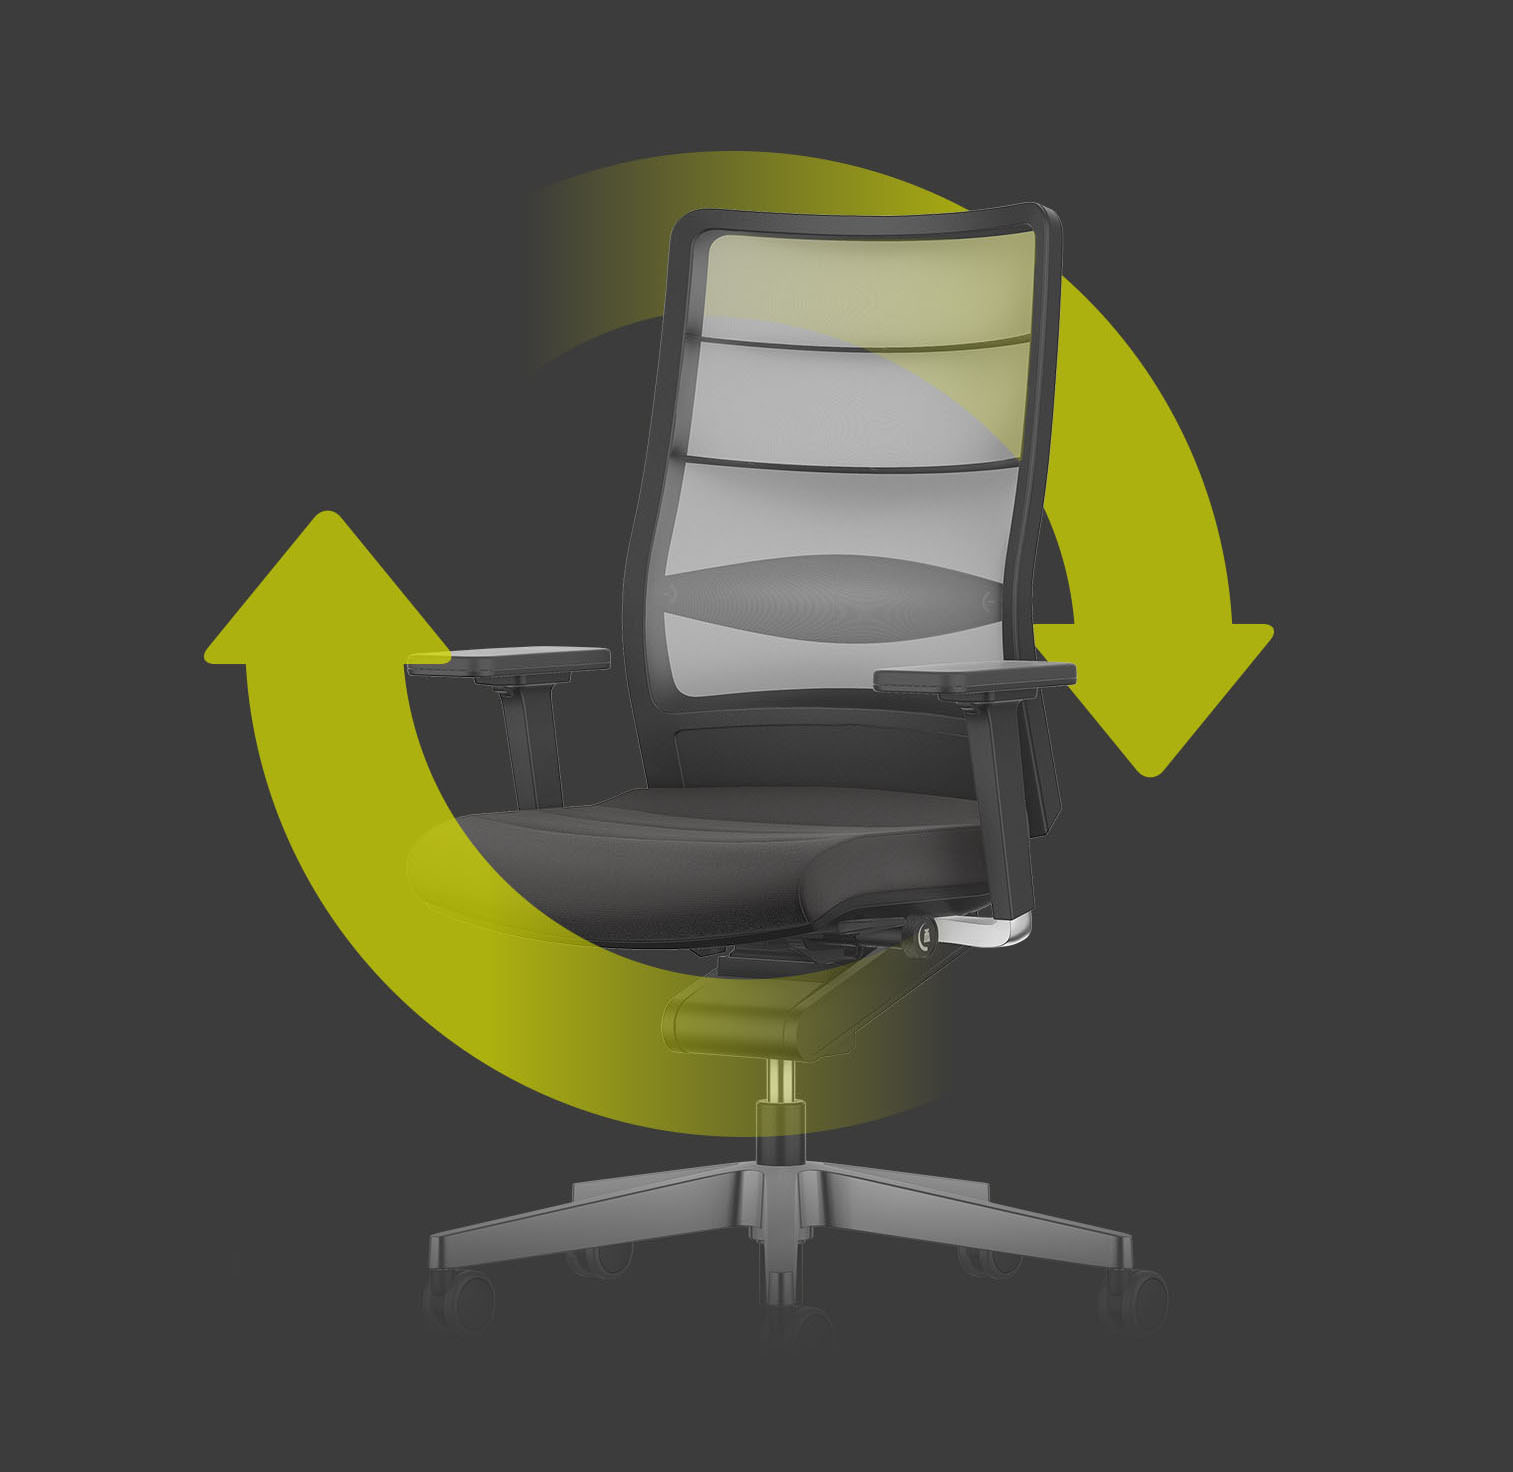 Bureaudraaistoel AIRPAD in het zwart met lichte rugleuning met netbespanning en twee groene pijlen die een cirkel om de stoel vormen. Deze geven de duurzaamheid en herbruikbaarheid van de stoel aan.